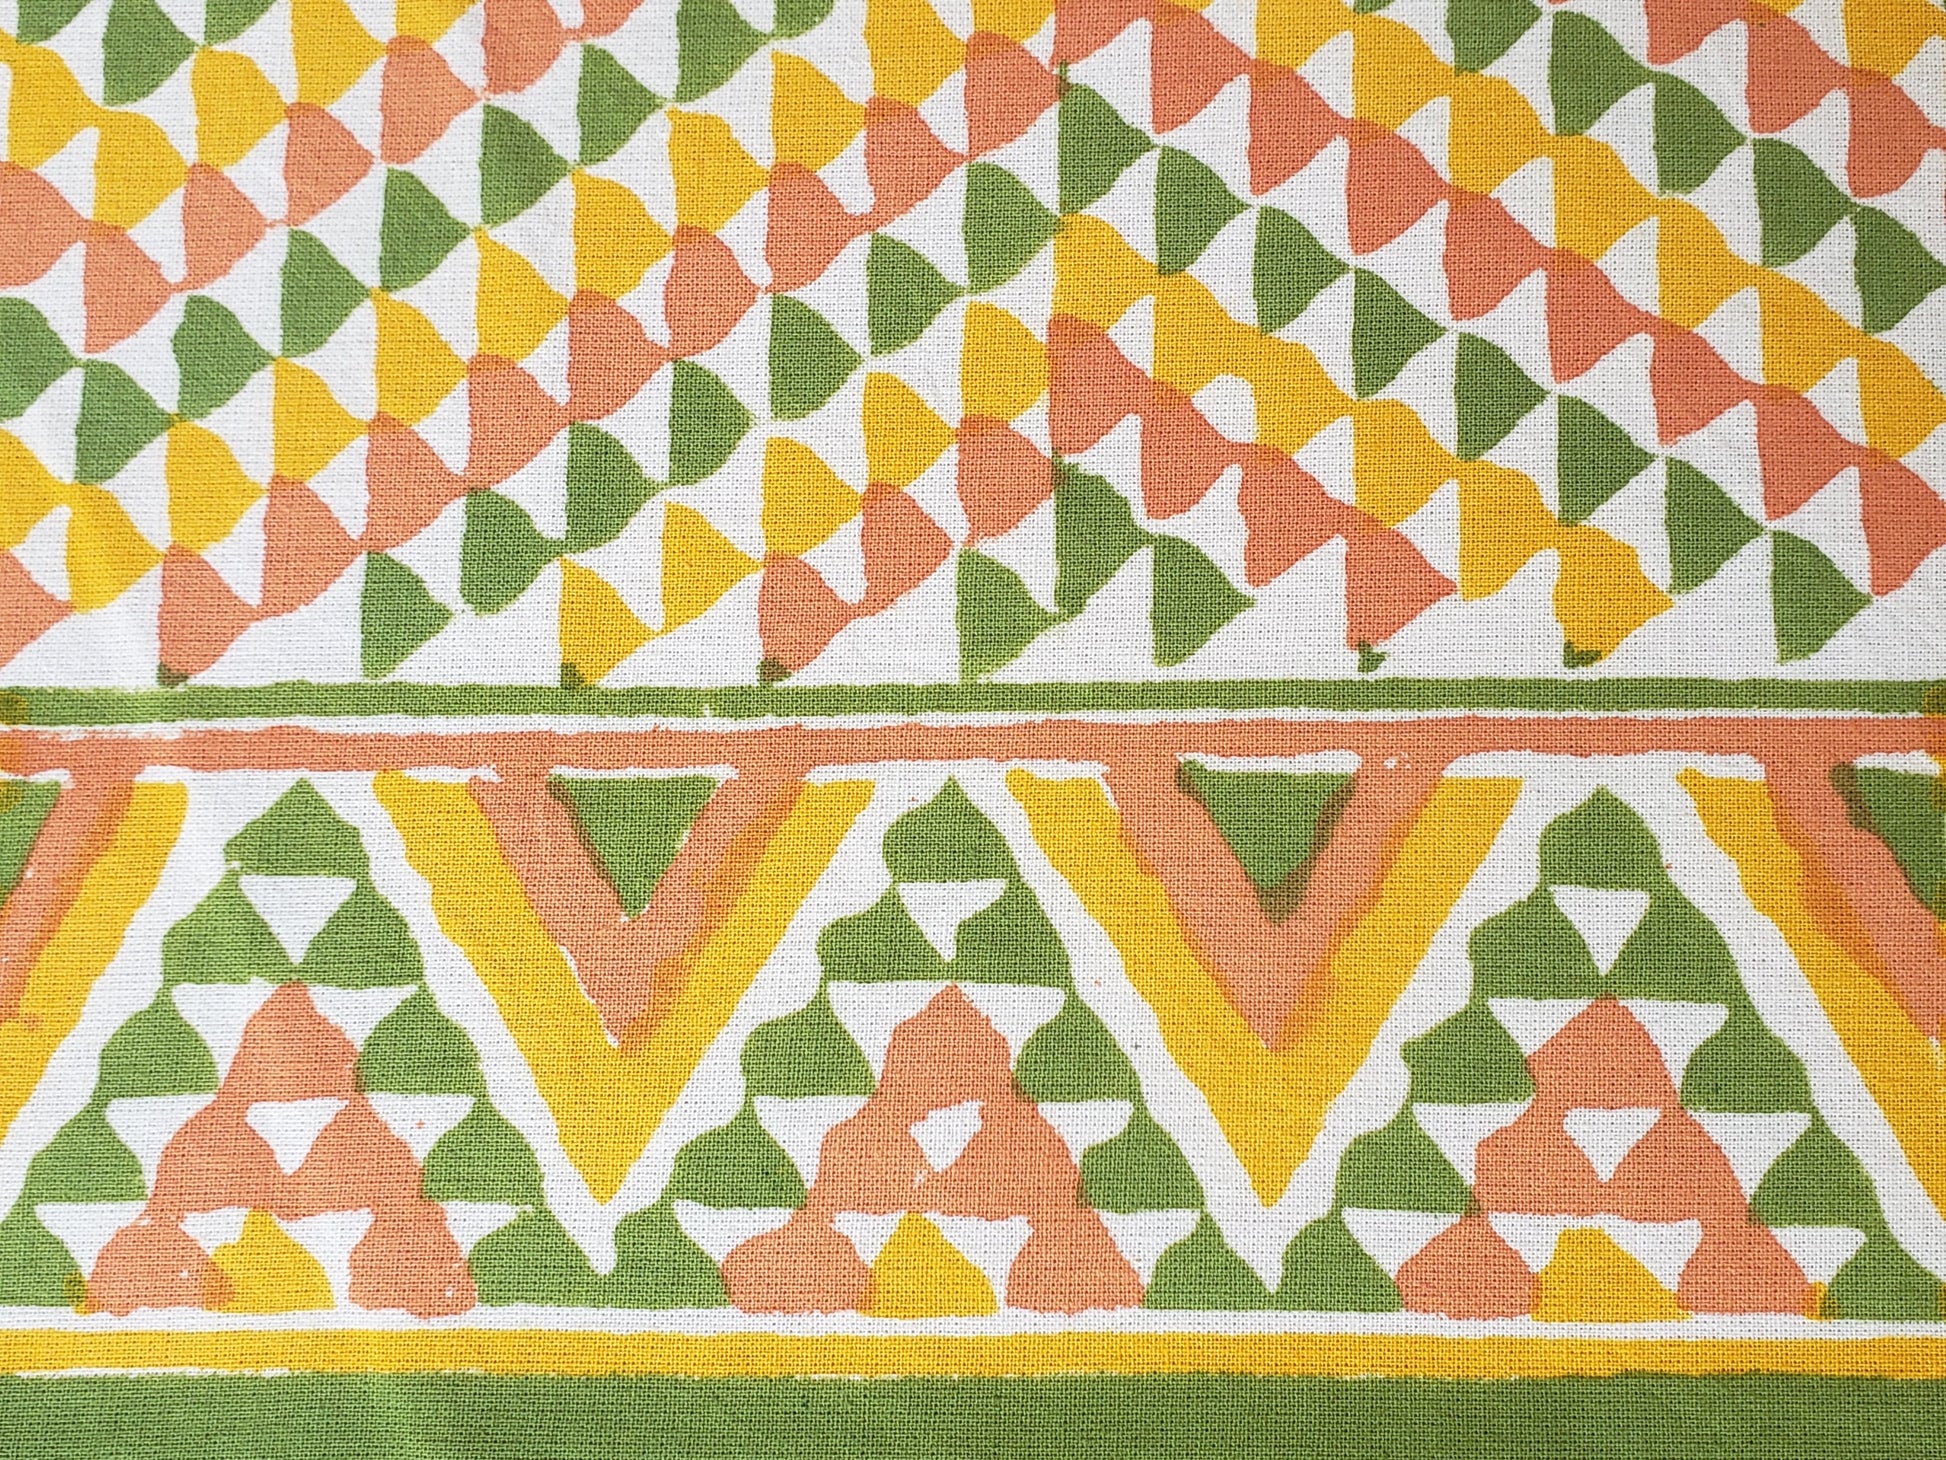 Sobrecama 100% algodón estampado a mano, con diseño en triángulos color ocre, verde y amarillo. Hecho en la India.